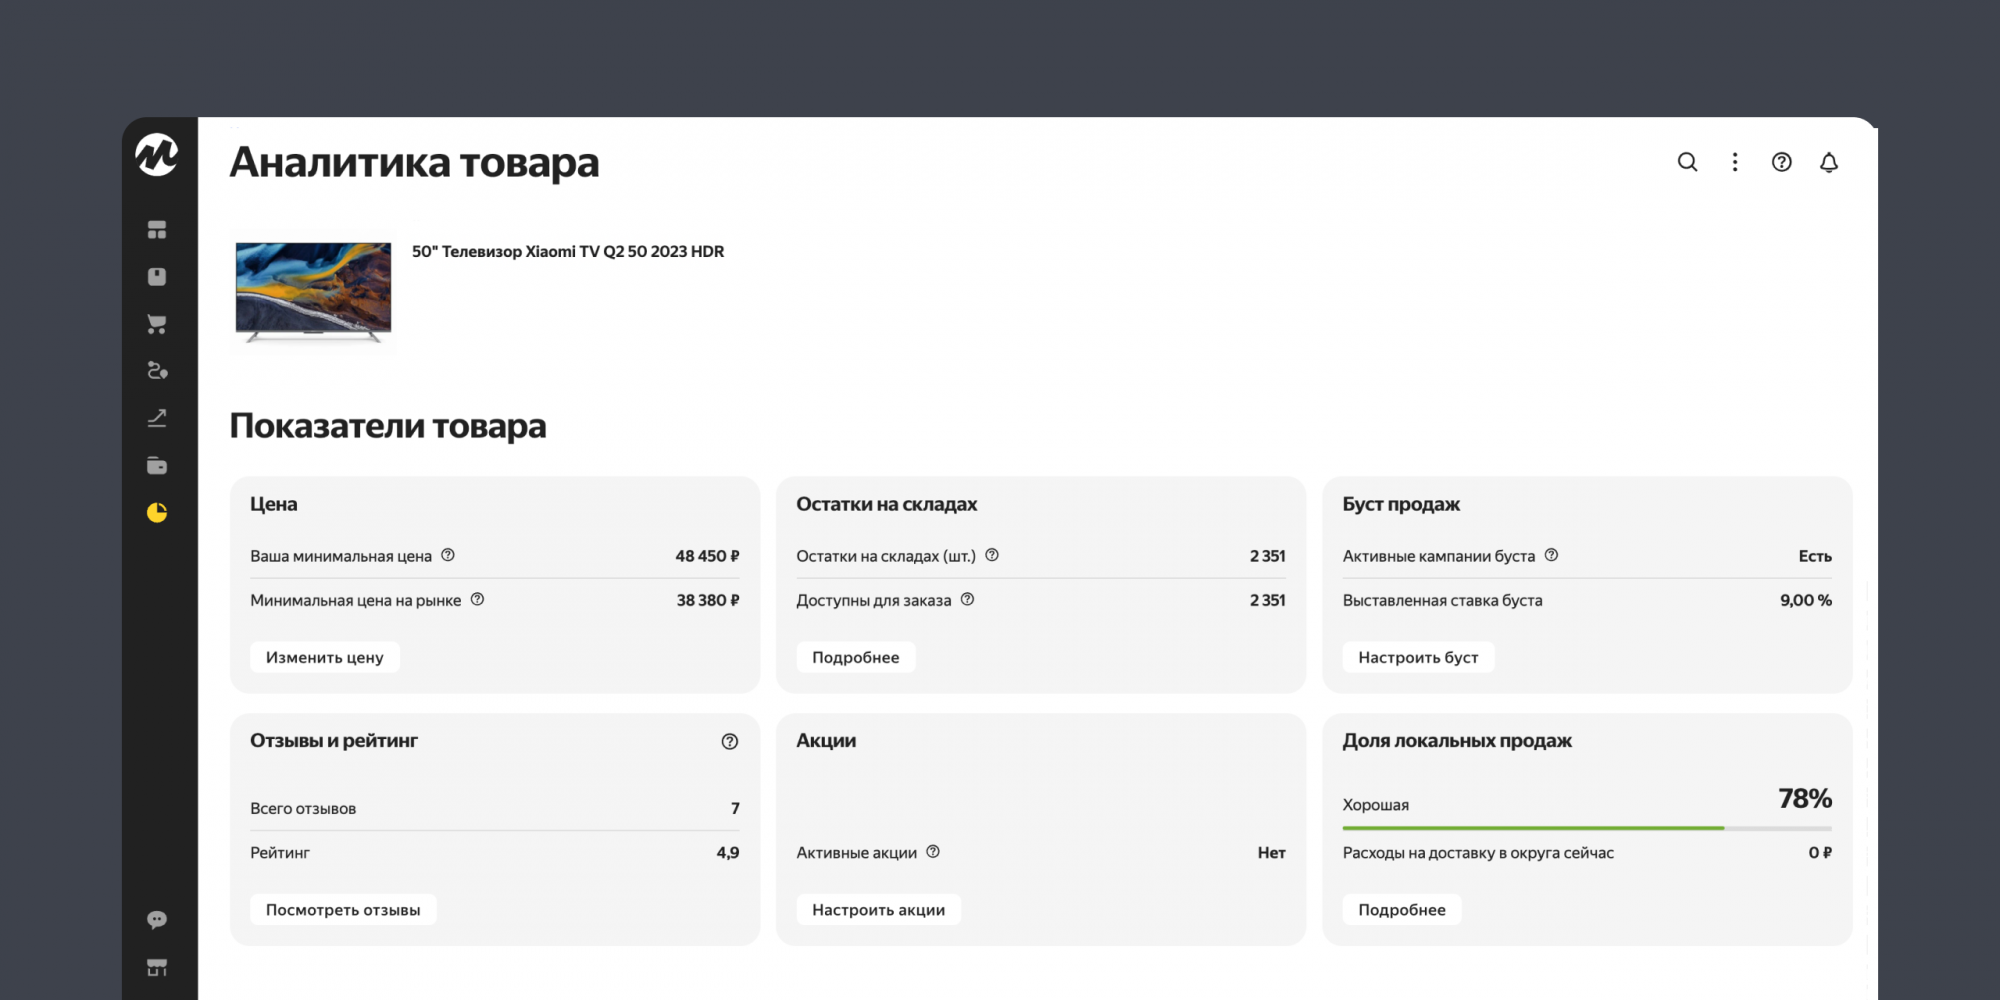 Яндекс Маркет представил новый отчет «Аналитика товара»